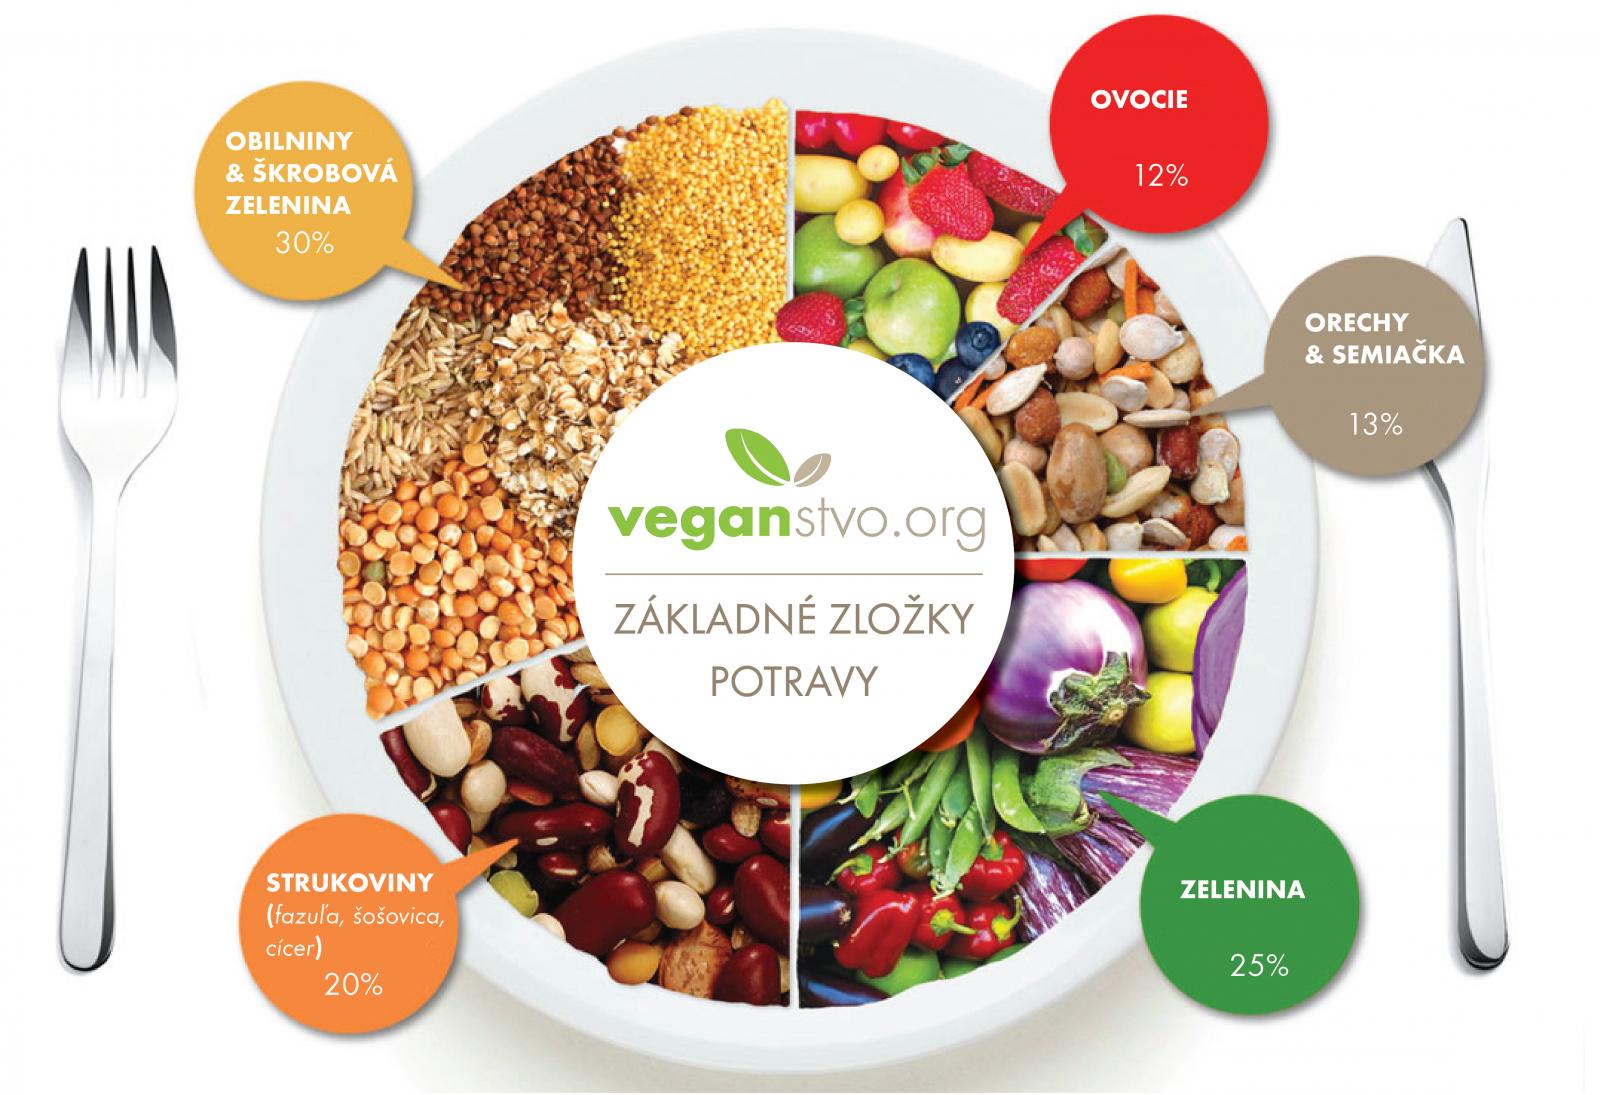 Poznaj základné zložky potravy – Prečo je veľmi dôležité sa pri prechode na vegánstvo najprv dobre informovať